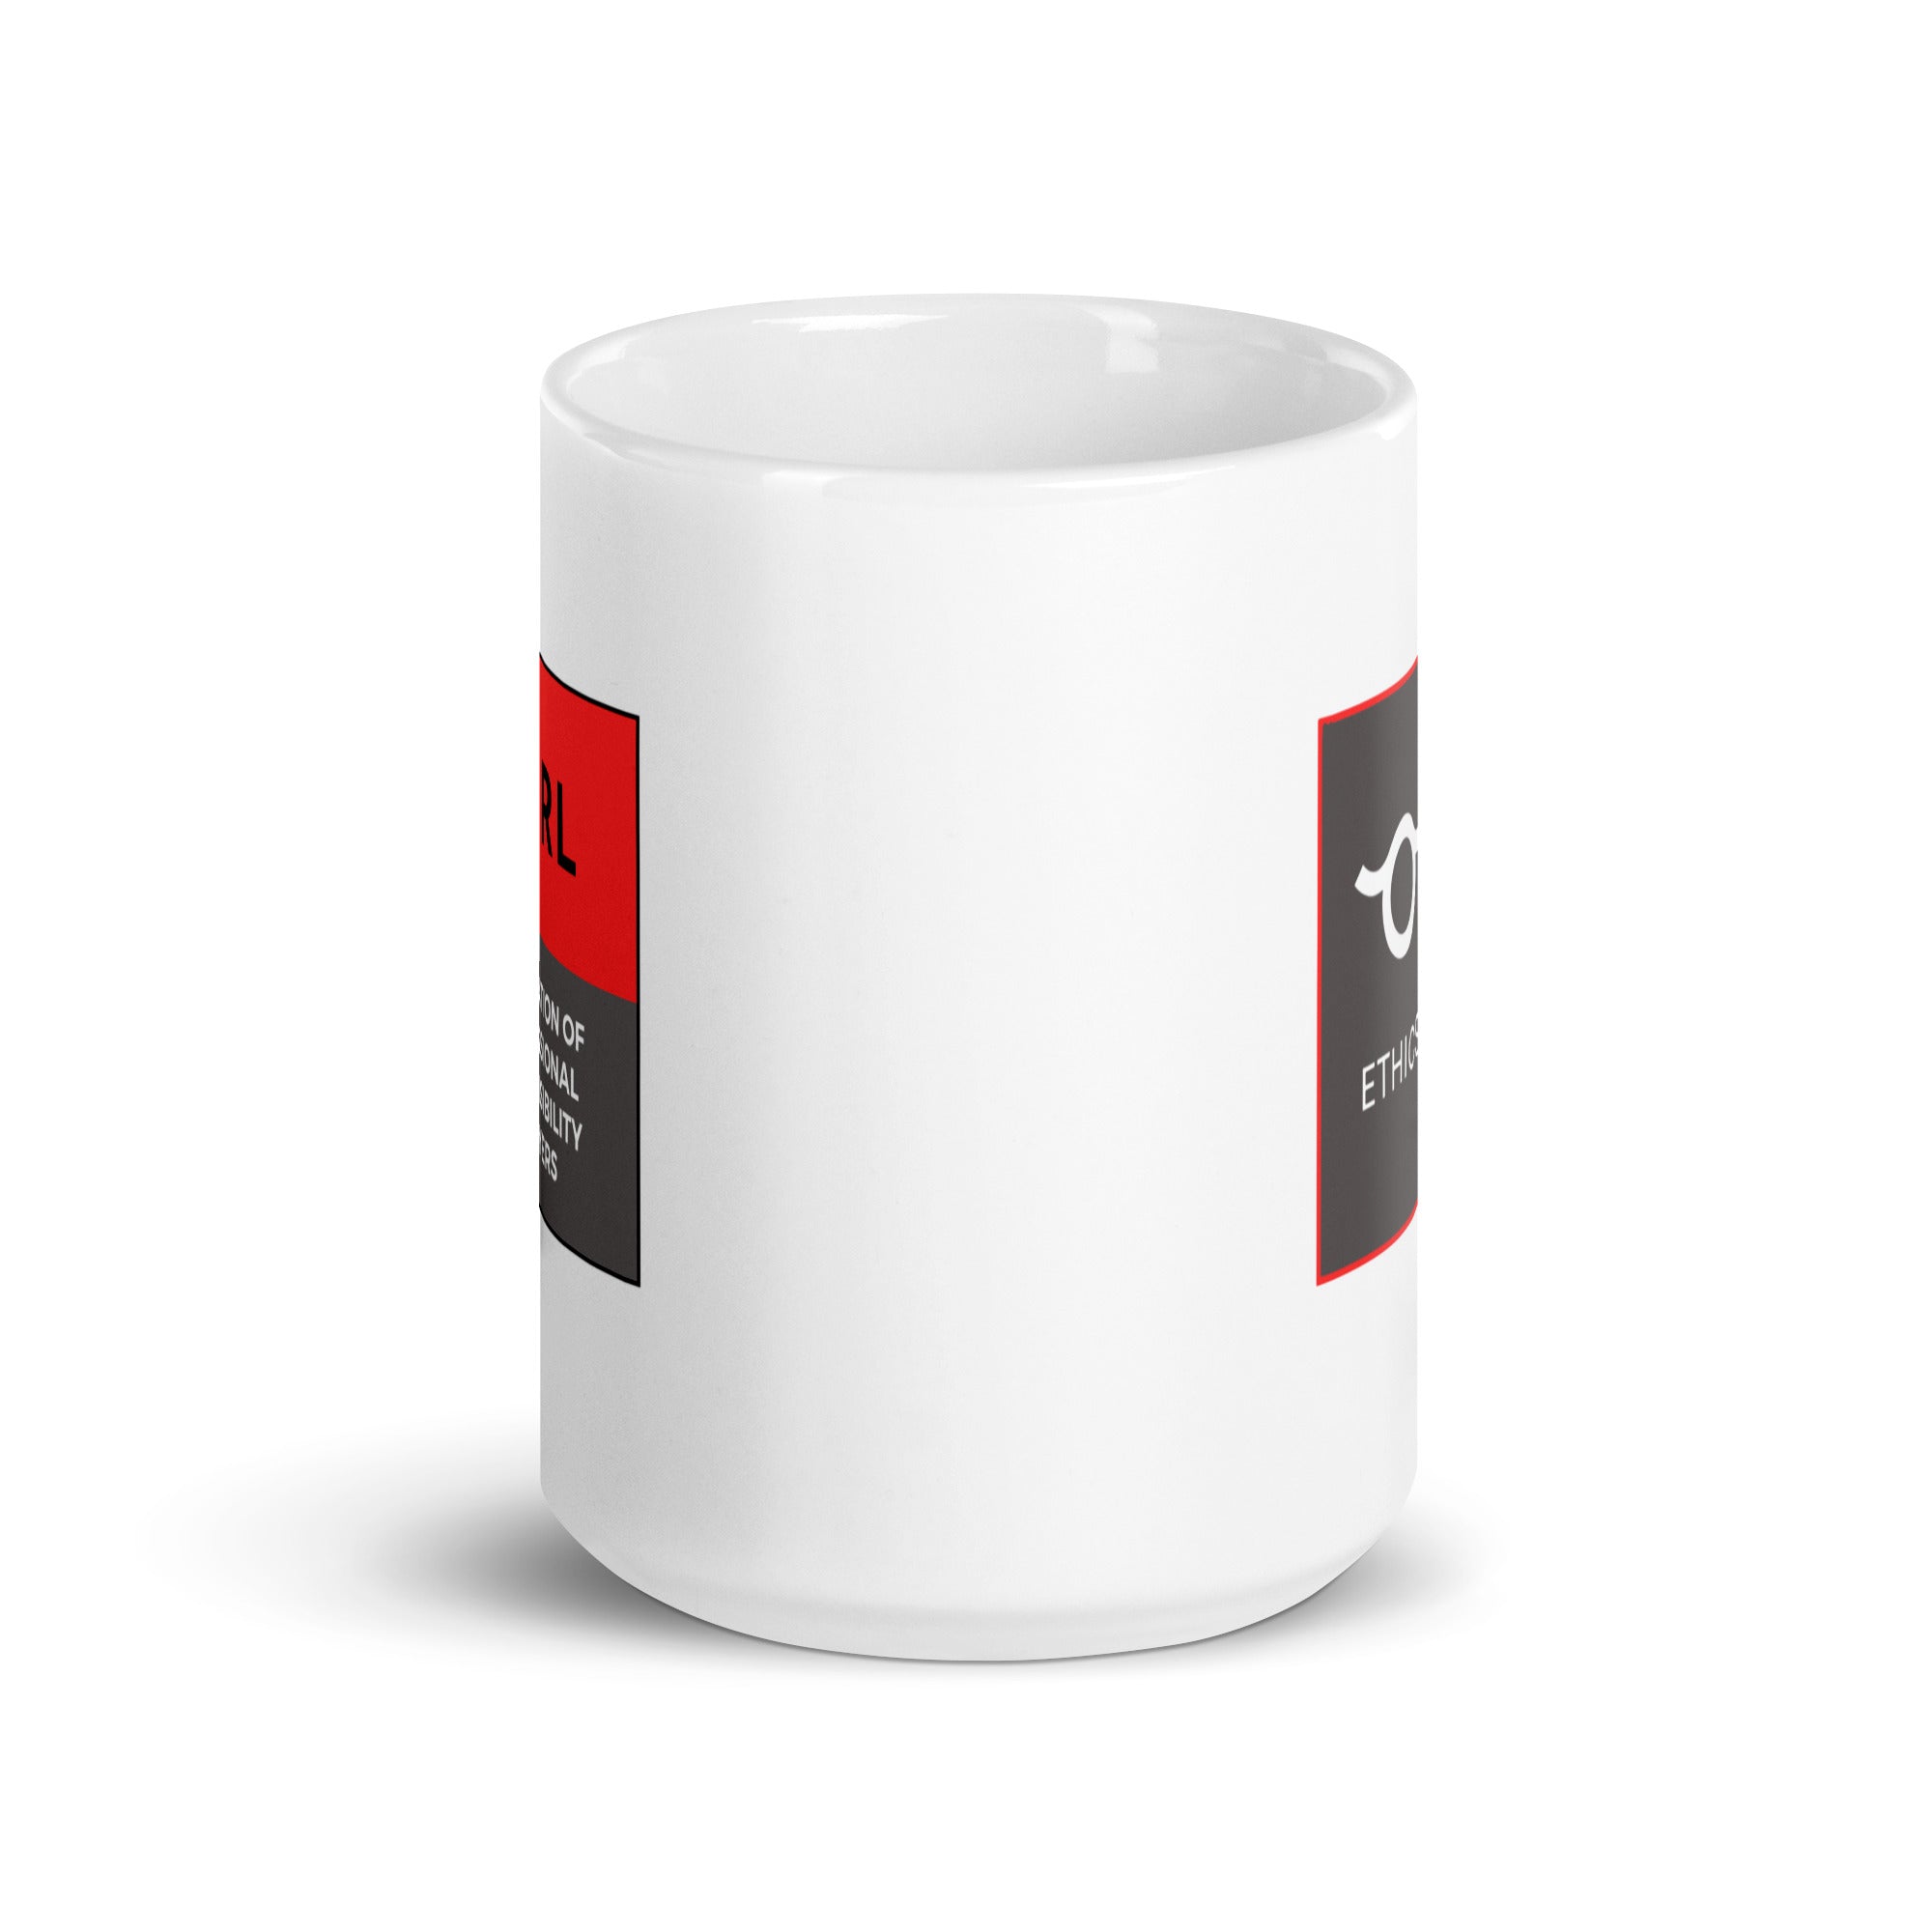 APRL White glossy mug v2